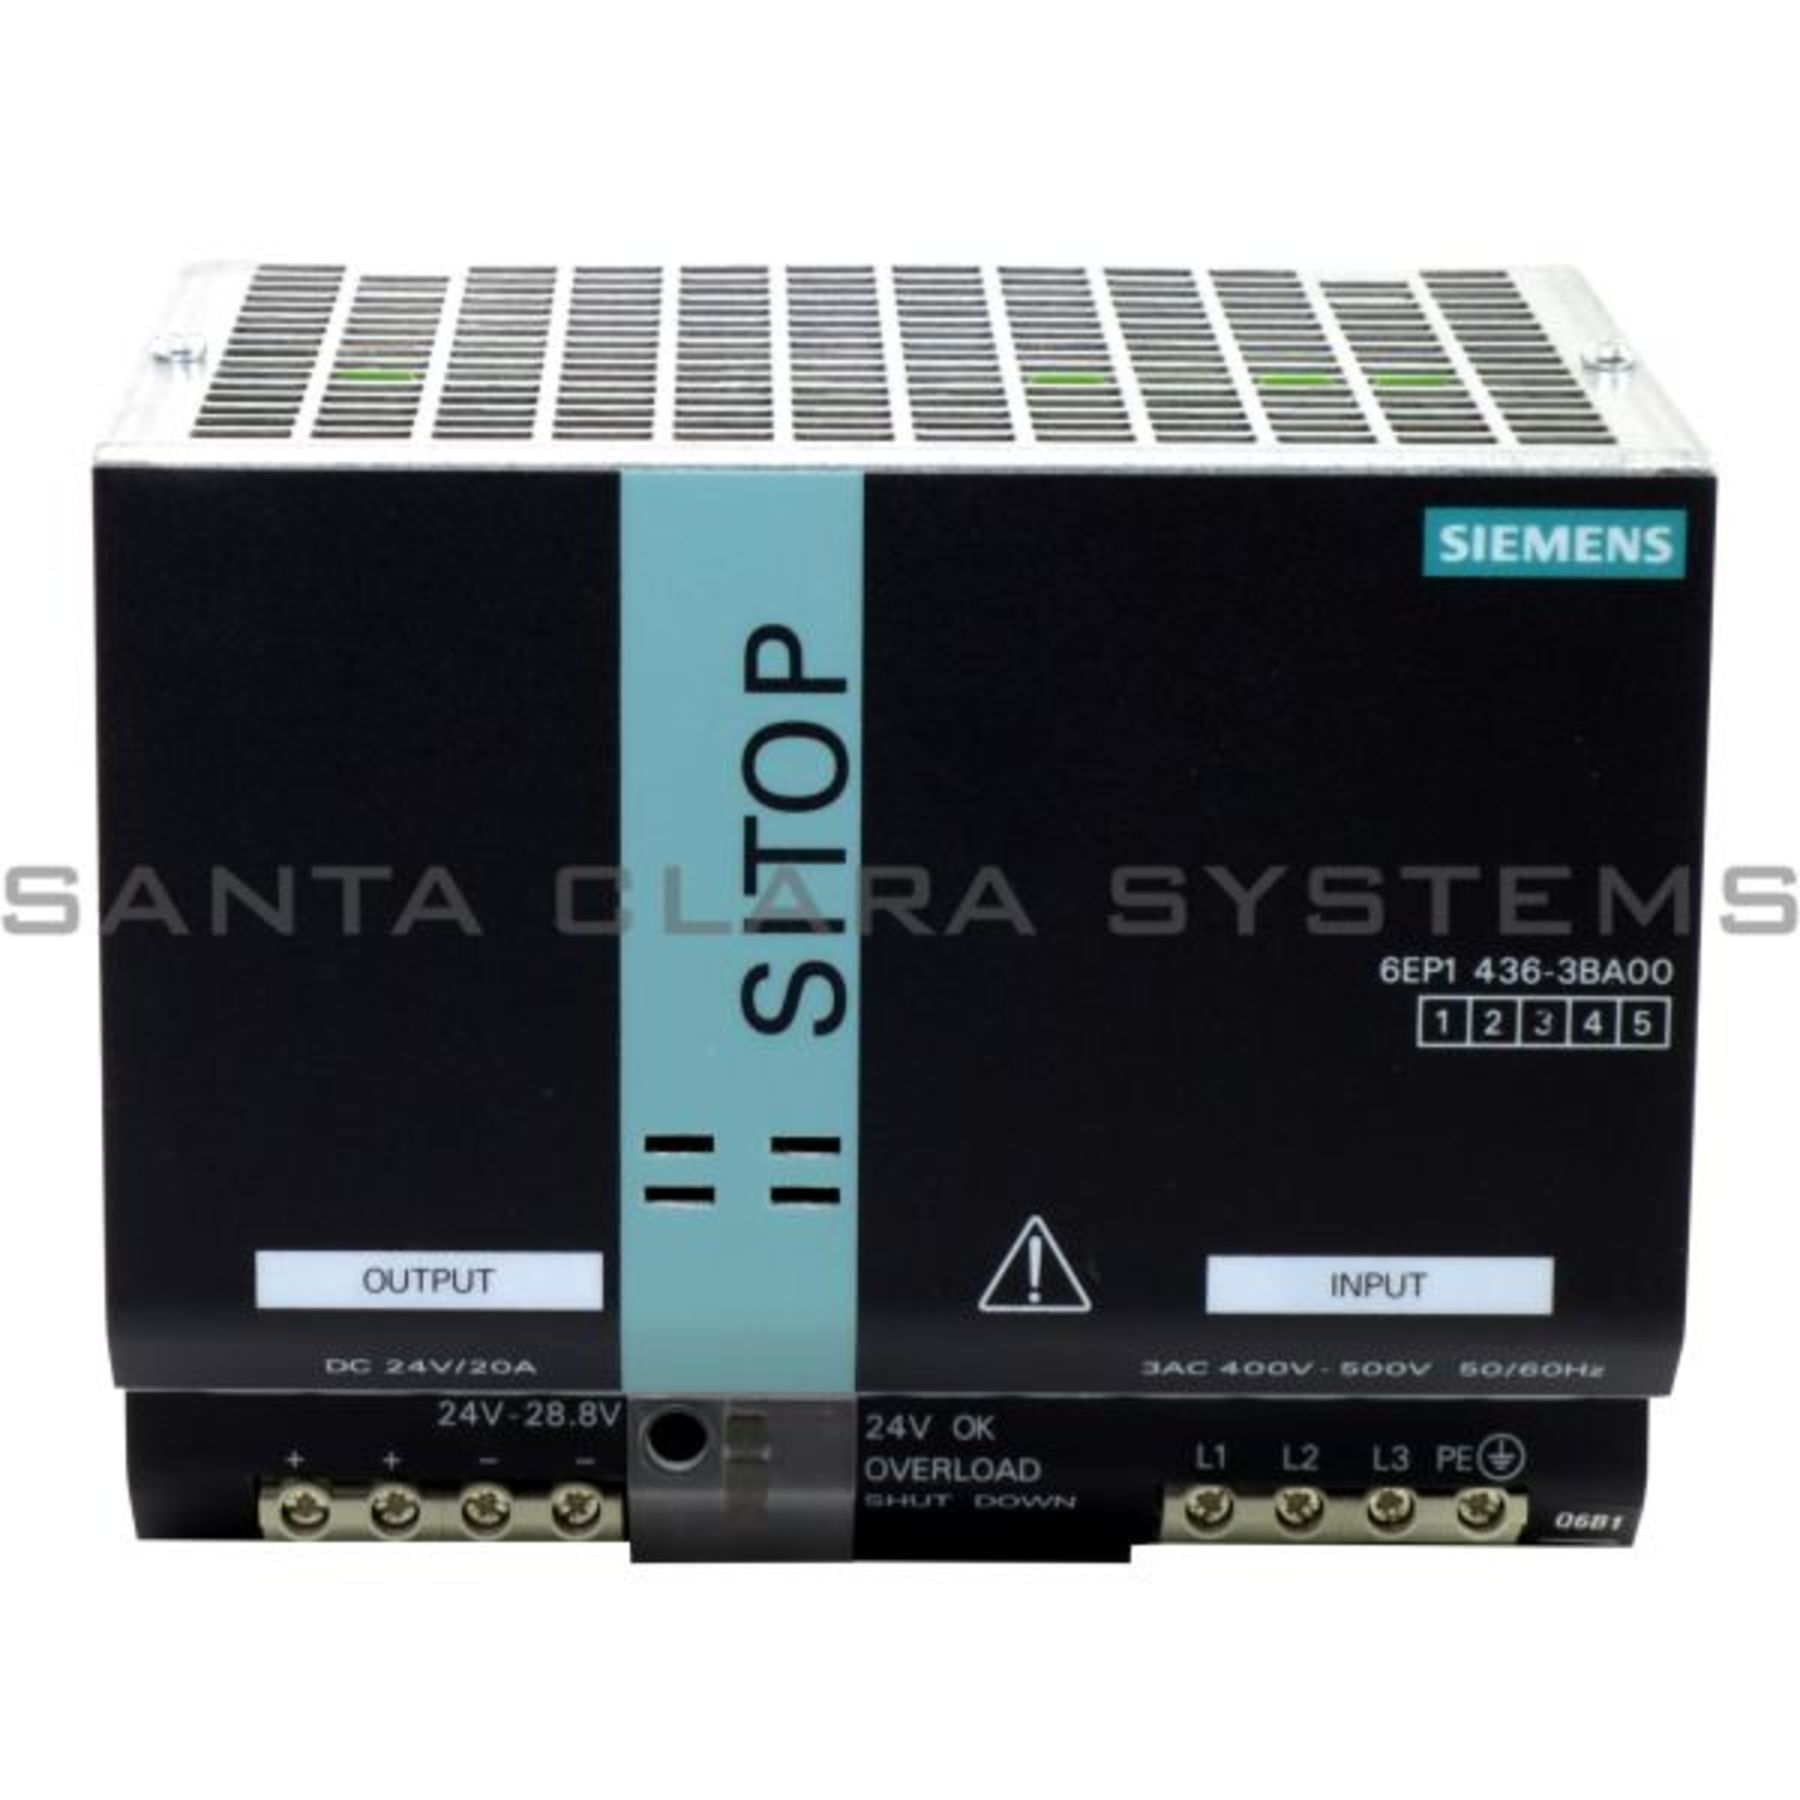 6EP1436-3BA00 Siemens Power Supply | SITOP Modular | 6EP1436-3BA00